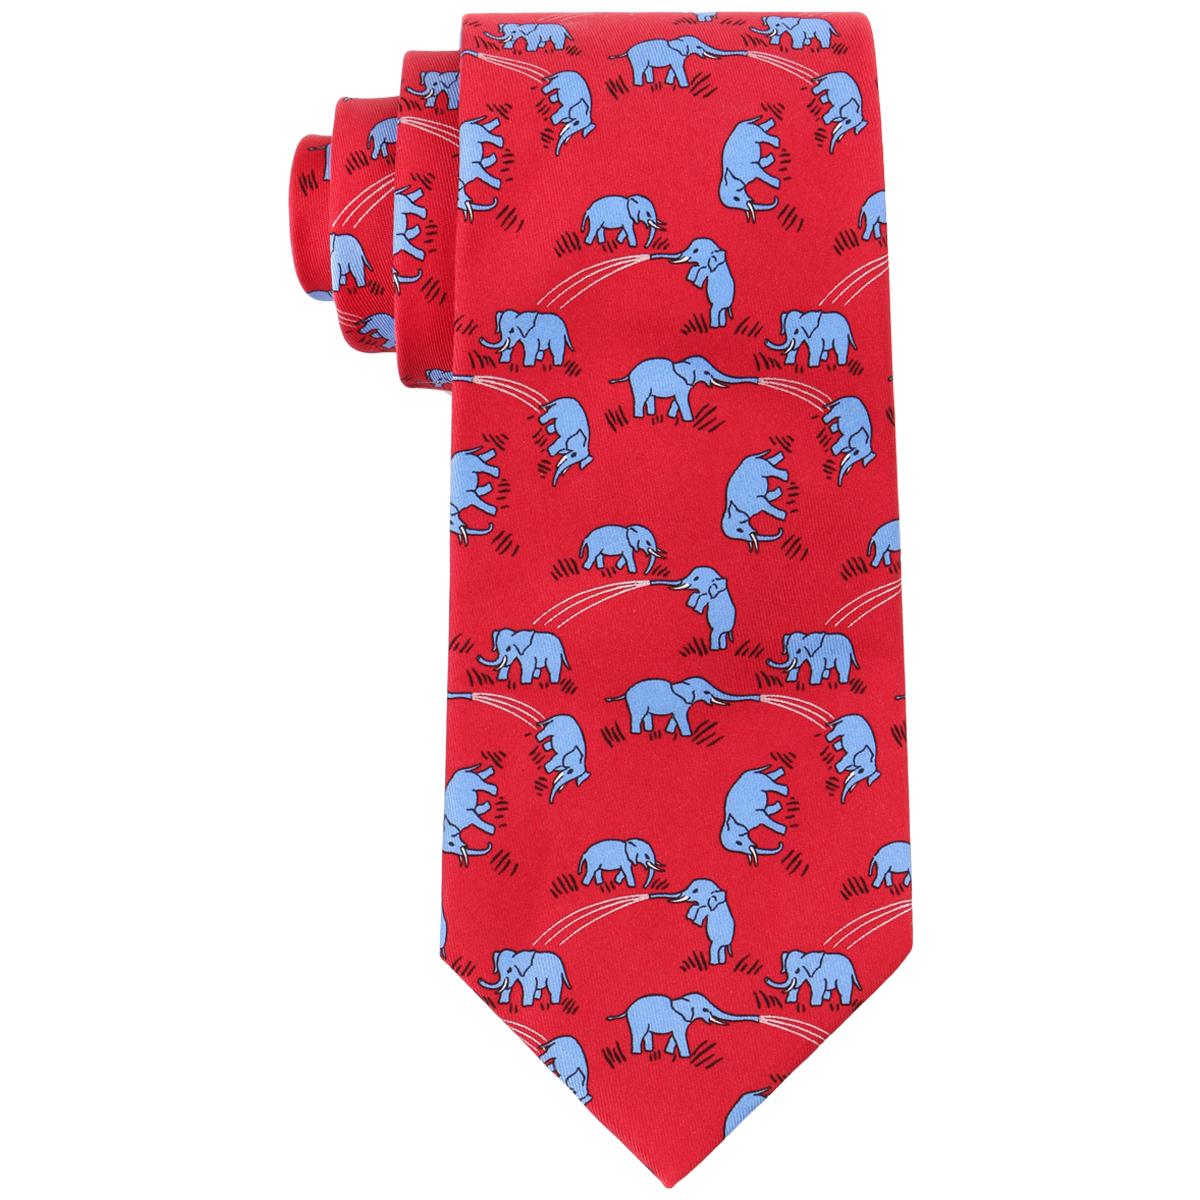 HERMES Red & Blue Elephant Print 5 Fold Silk Necktie Tie 7111 OA